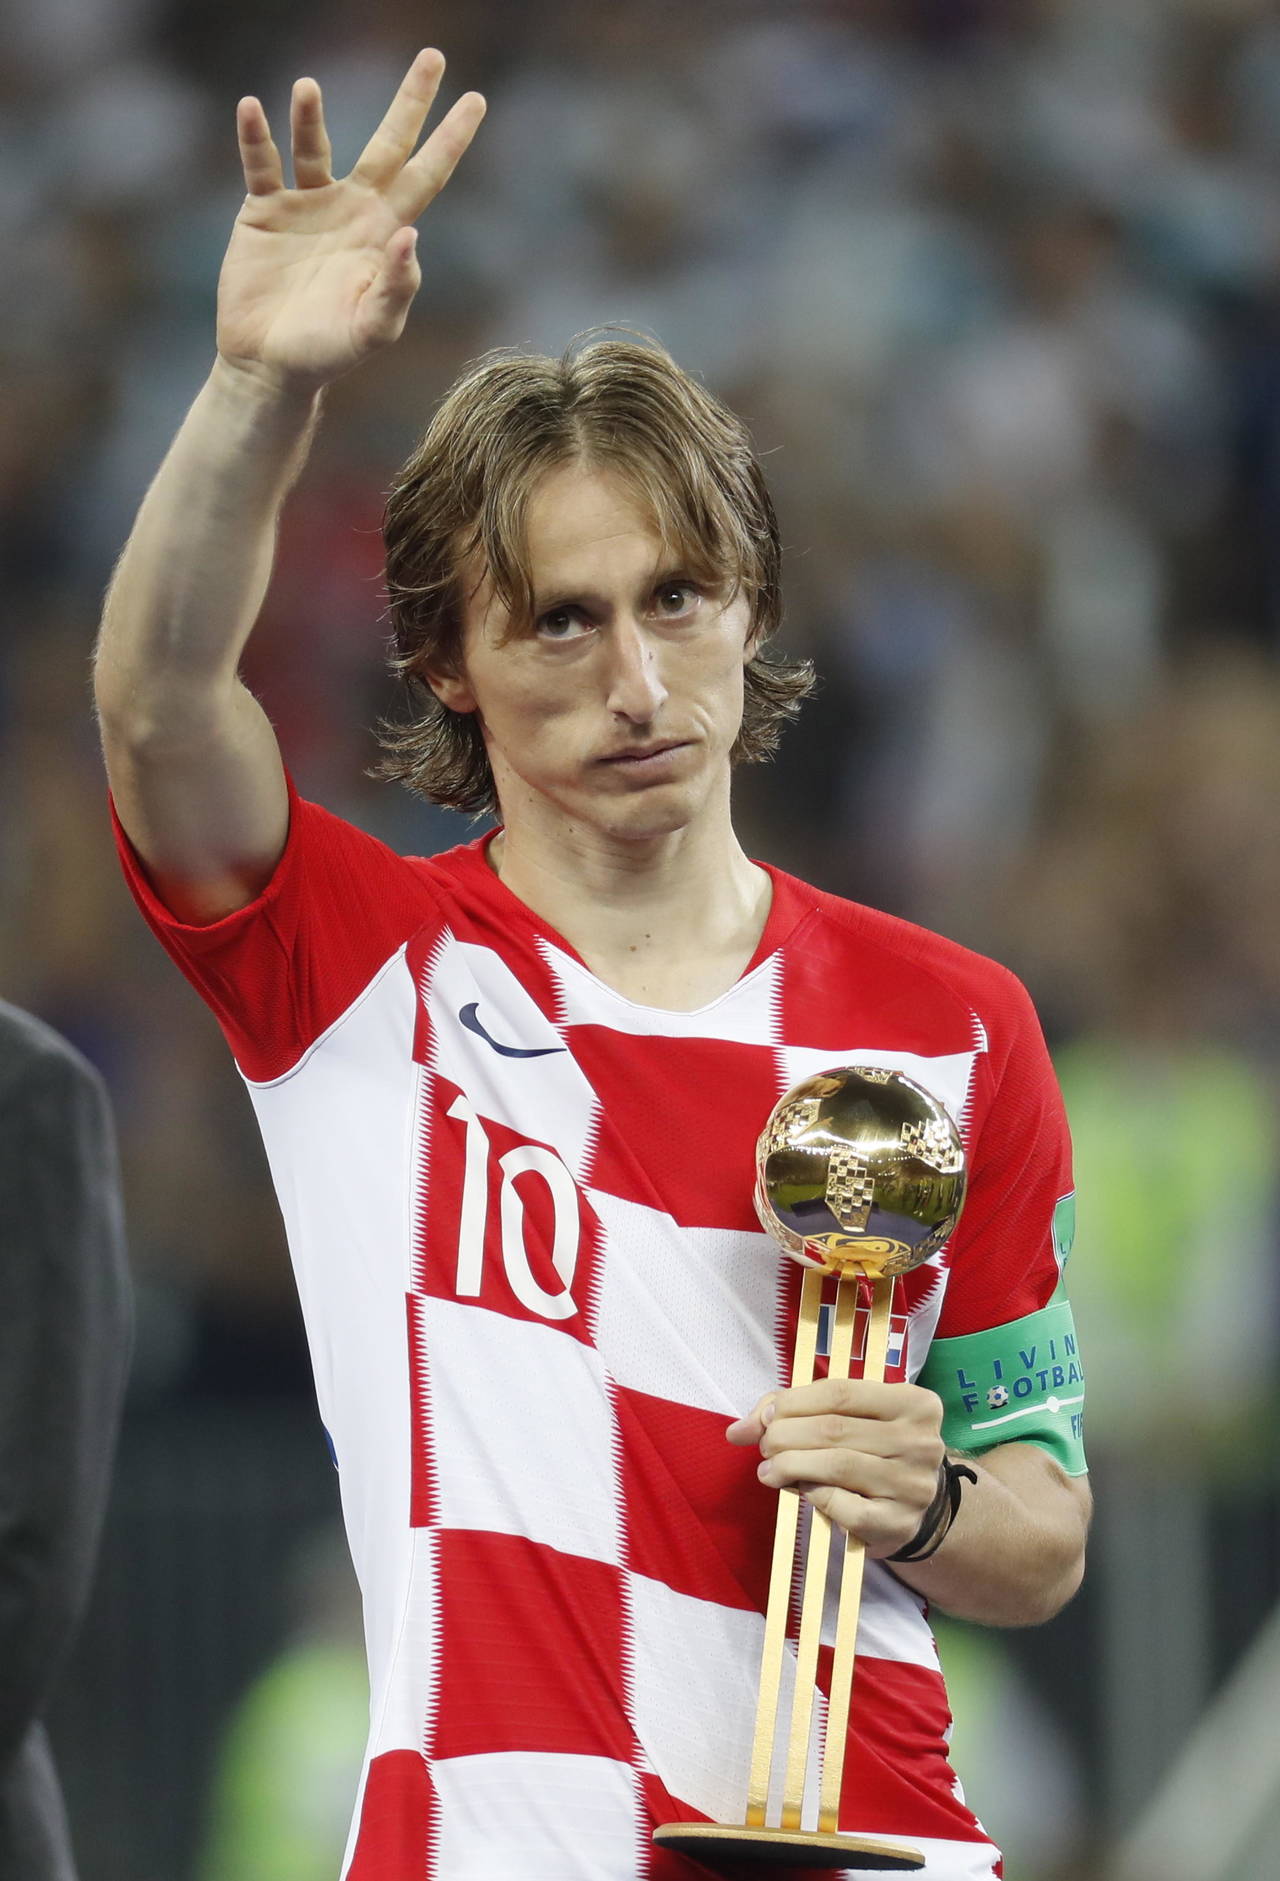 El mediocampista croata Luka Modric obtuvo ayer el Balón de Oro que se otorga al mejor jugador del Mundial. Modric prefería el título a ser el mejor